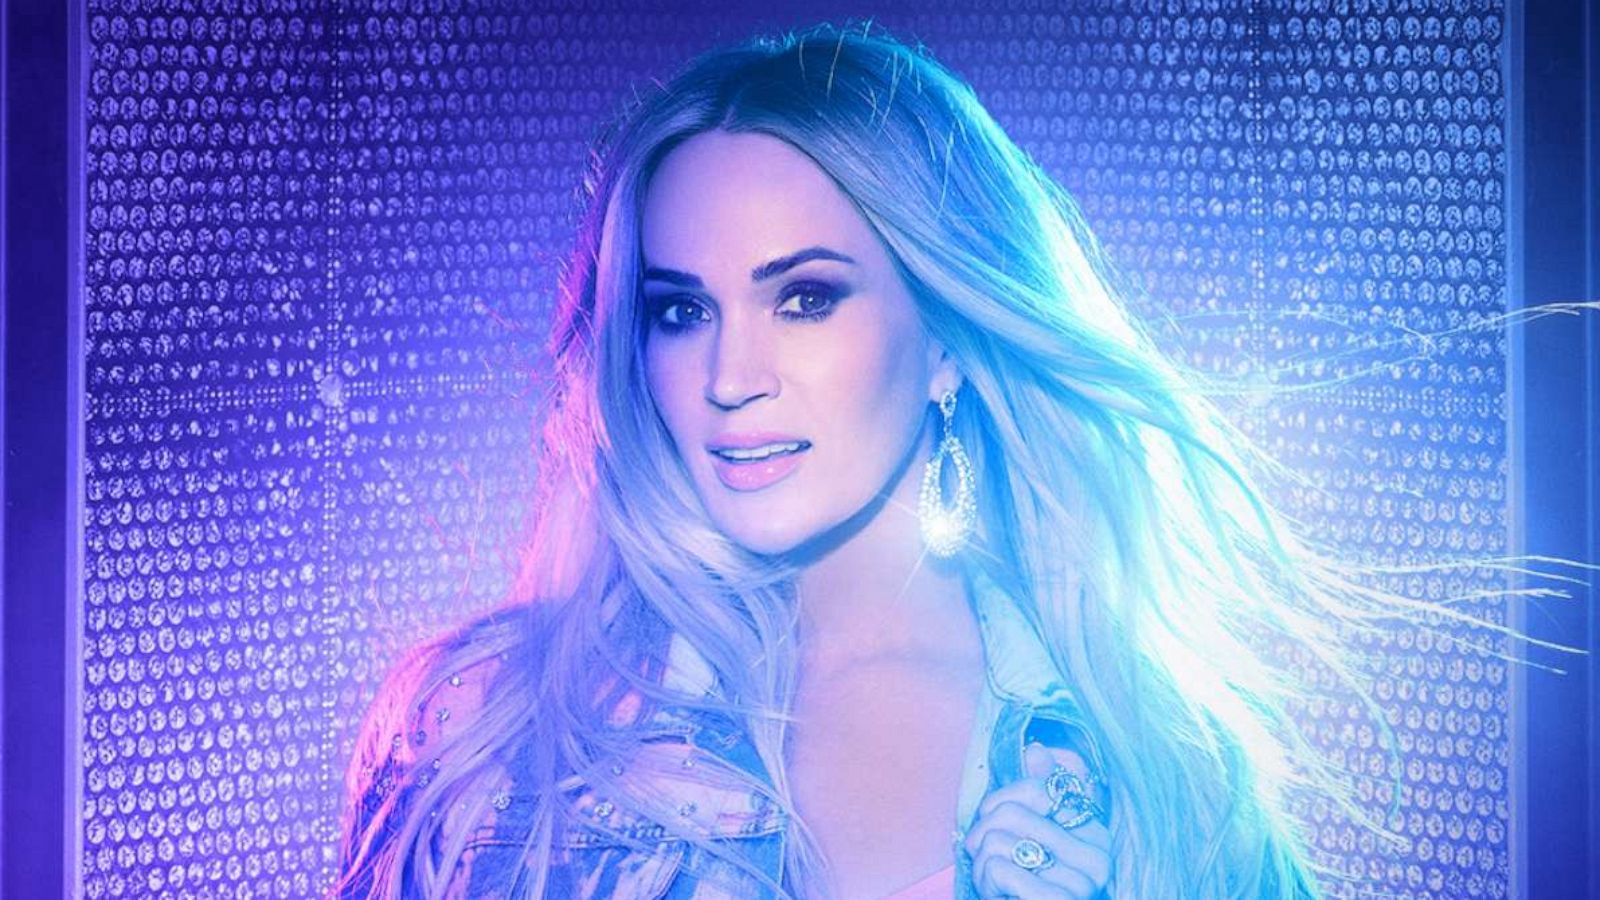 Carrie Underwood's Latest Album 'Denim & Rhinestones' To Drop June 10 